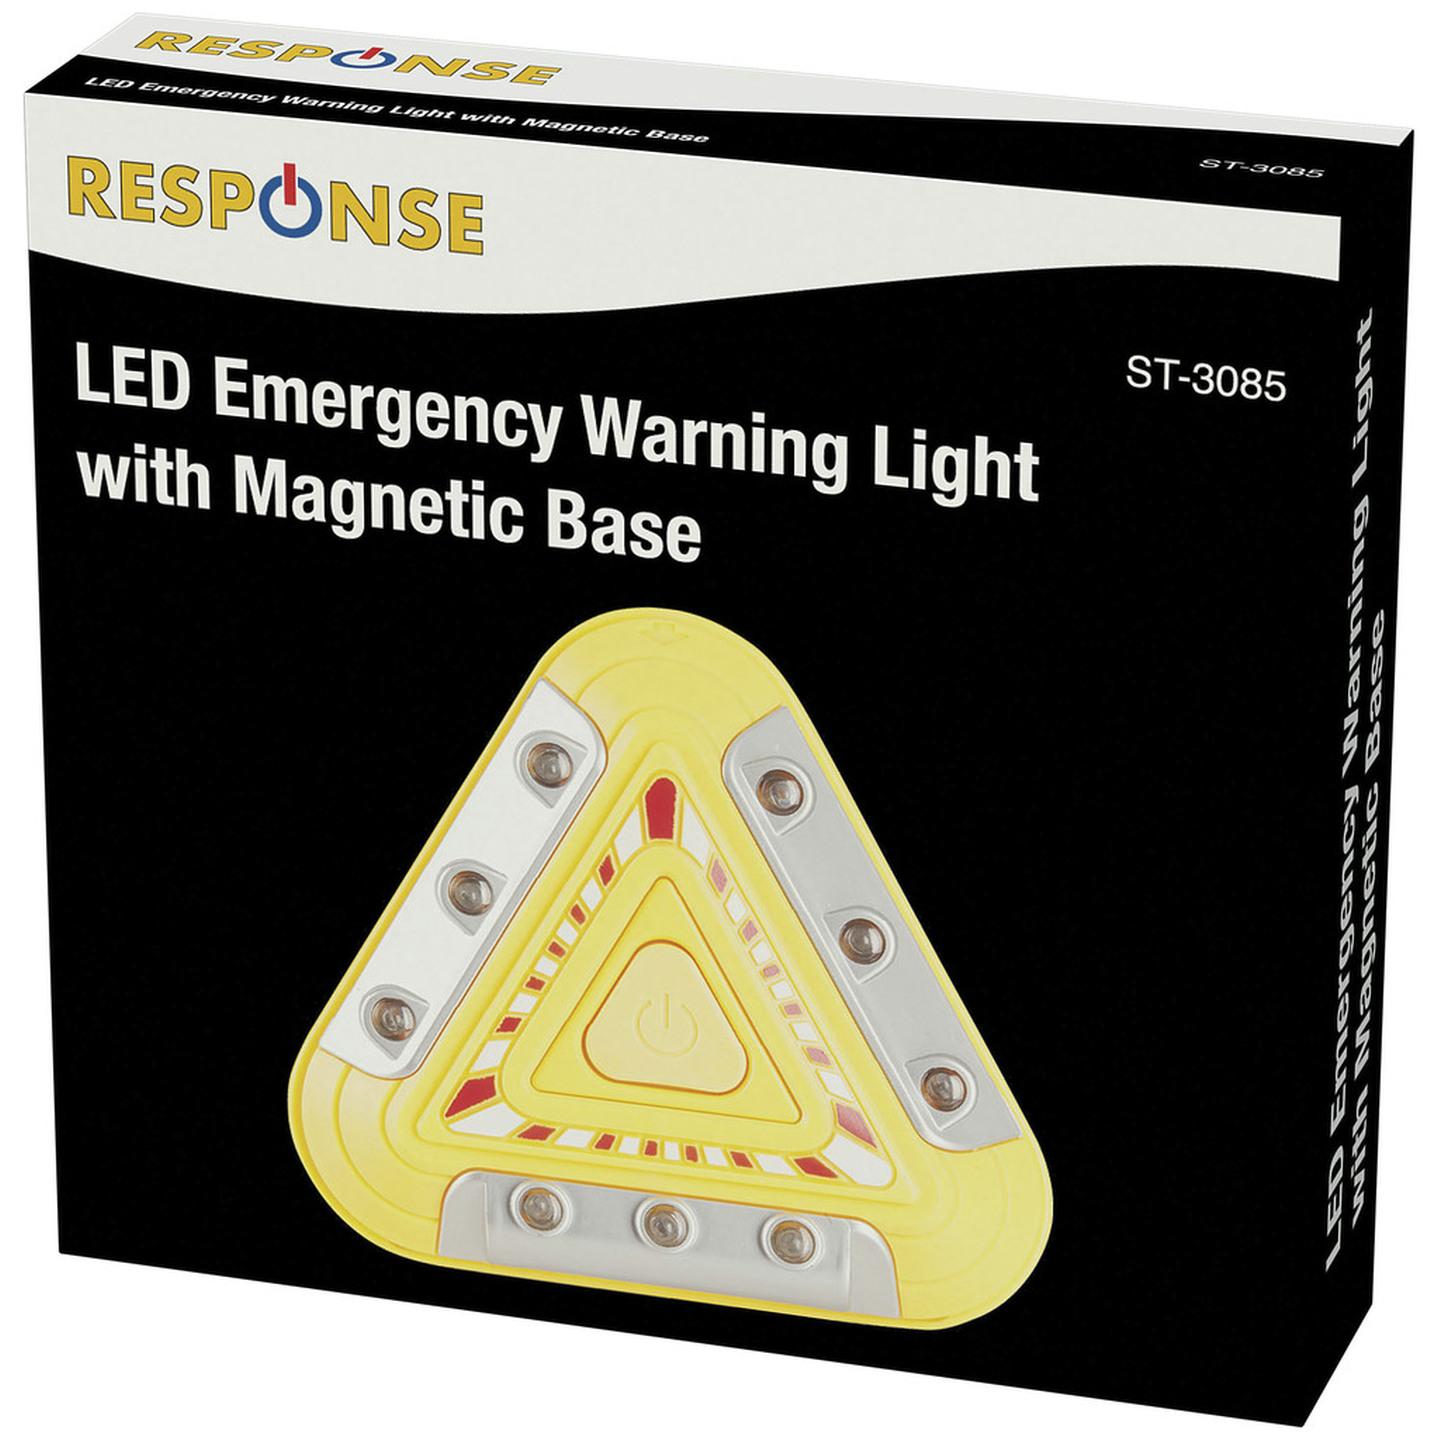 LED Emergency Warning Light with Magnetic Base